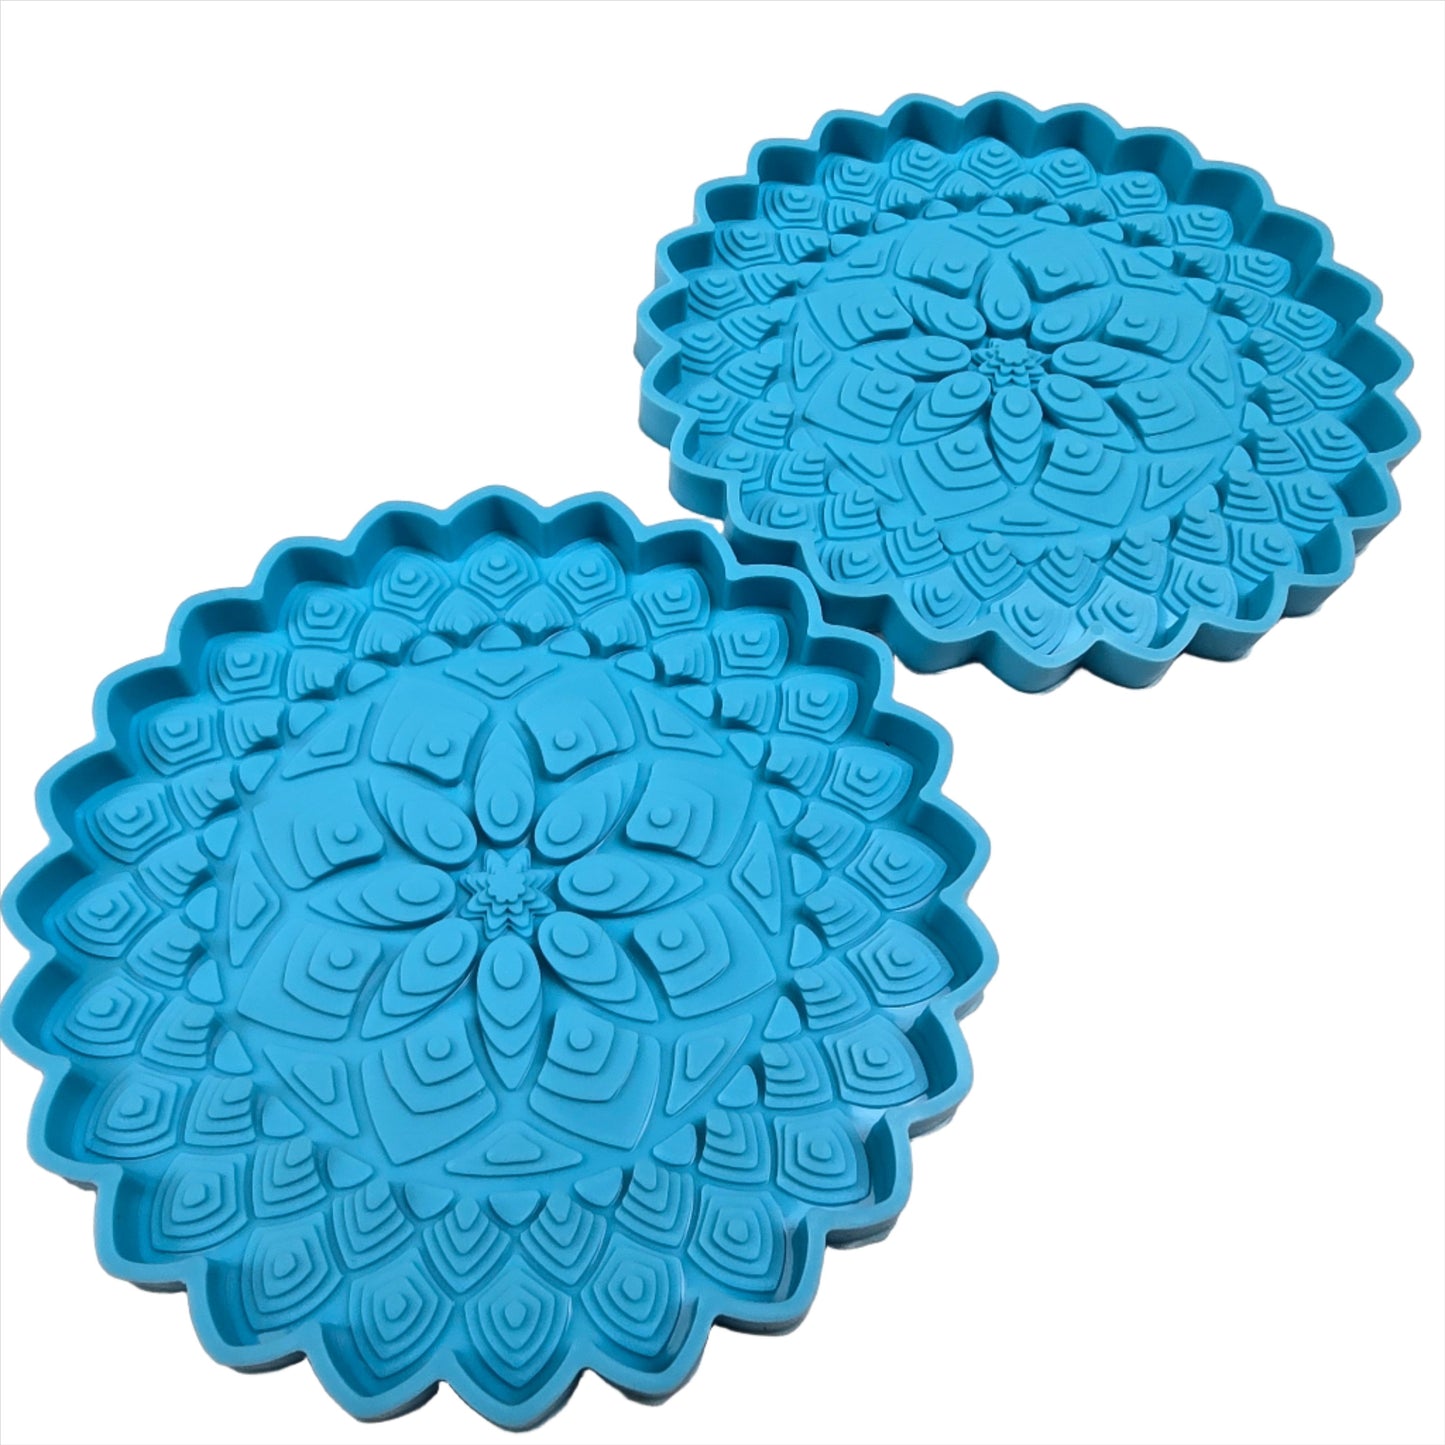 Textured Mandala Silicone Coaster Molds (style #1) - Set of 4